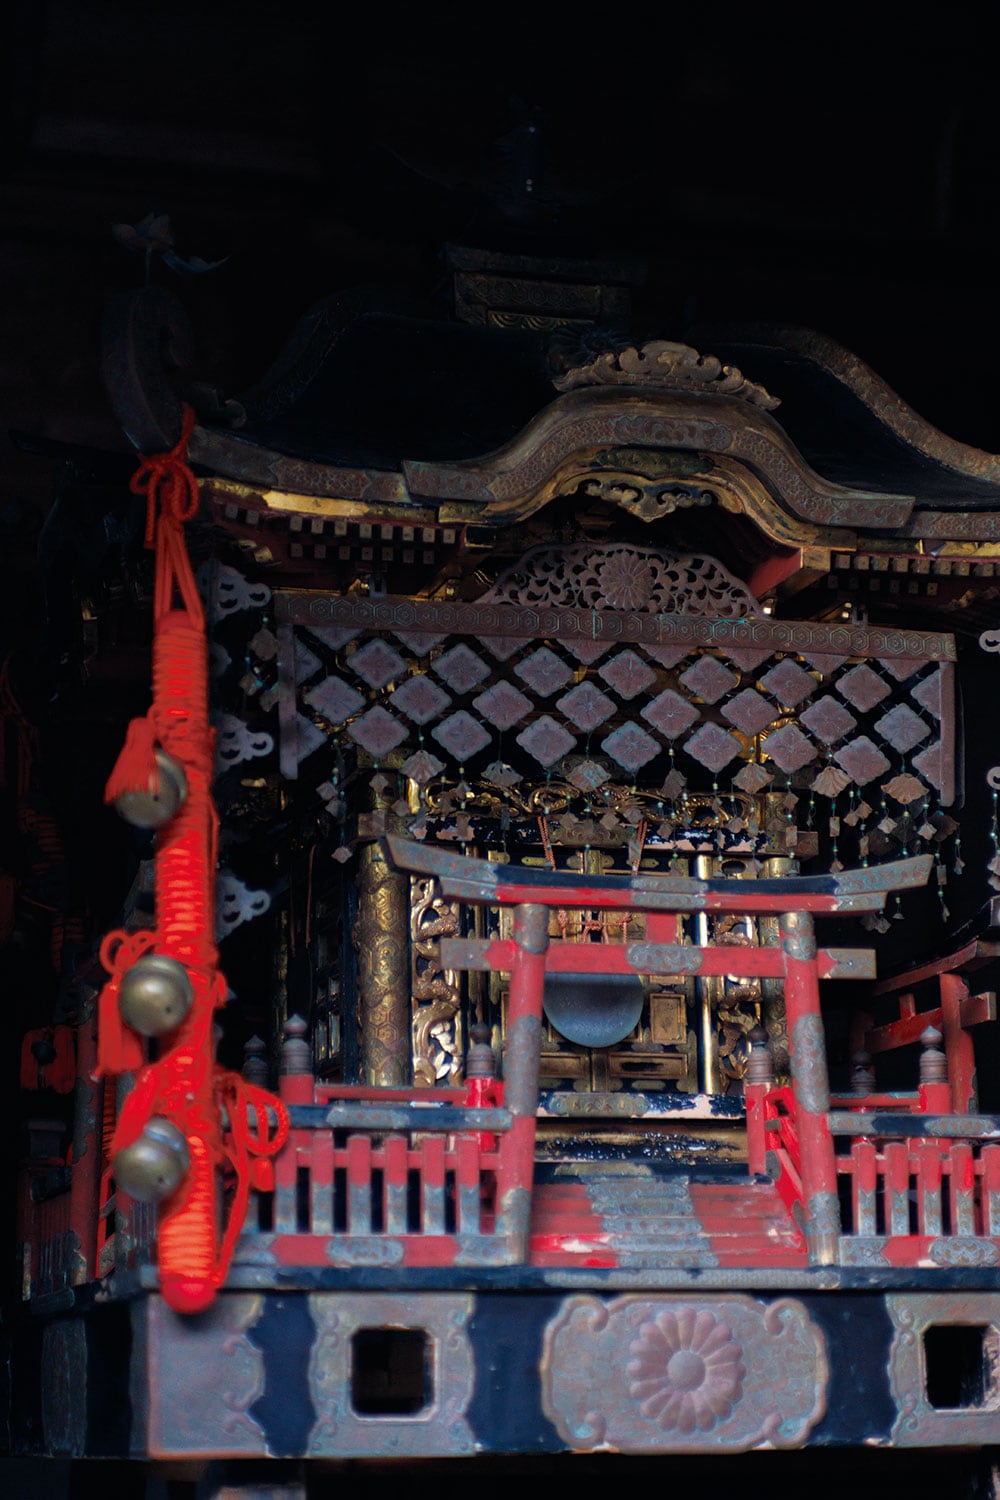 【中ノ島】隠岐神社。約180年前に奉納された神輿は隠岐で唯一の校倉造りの建物に納められている。